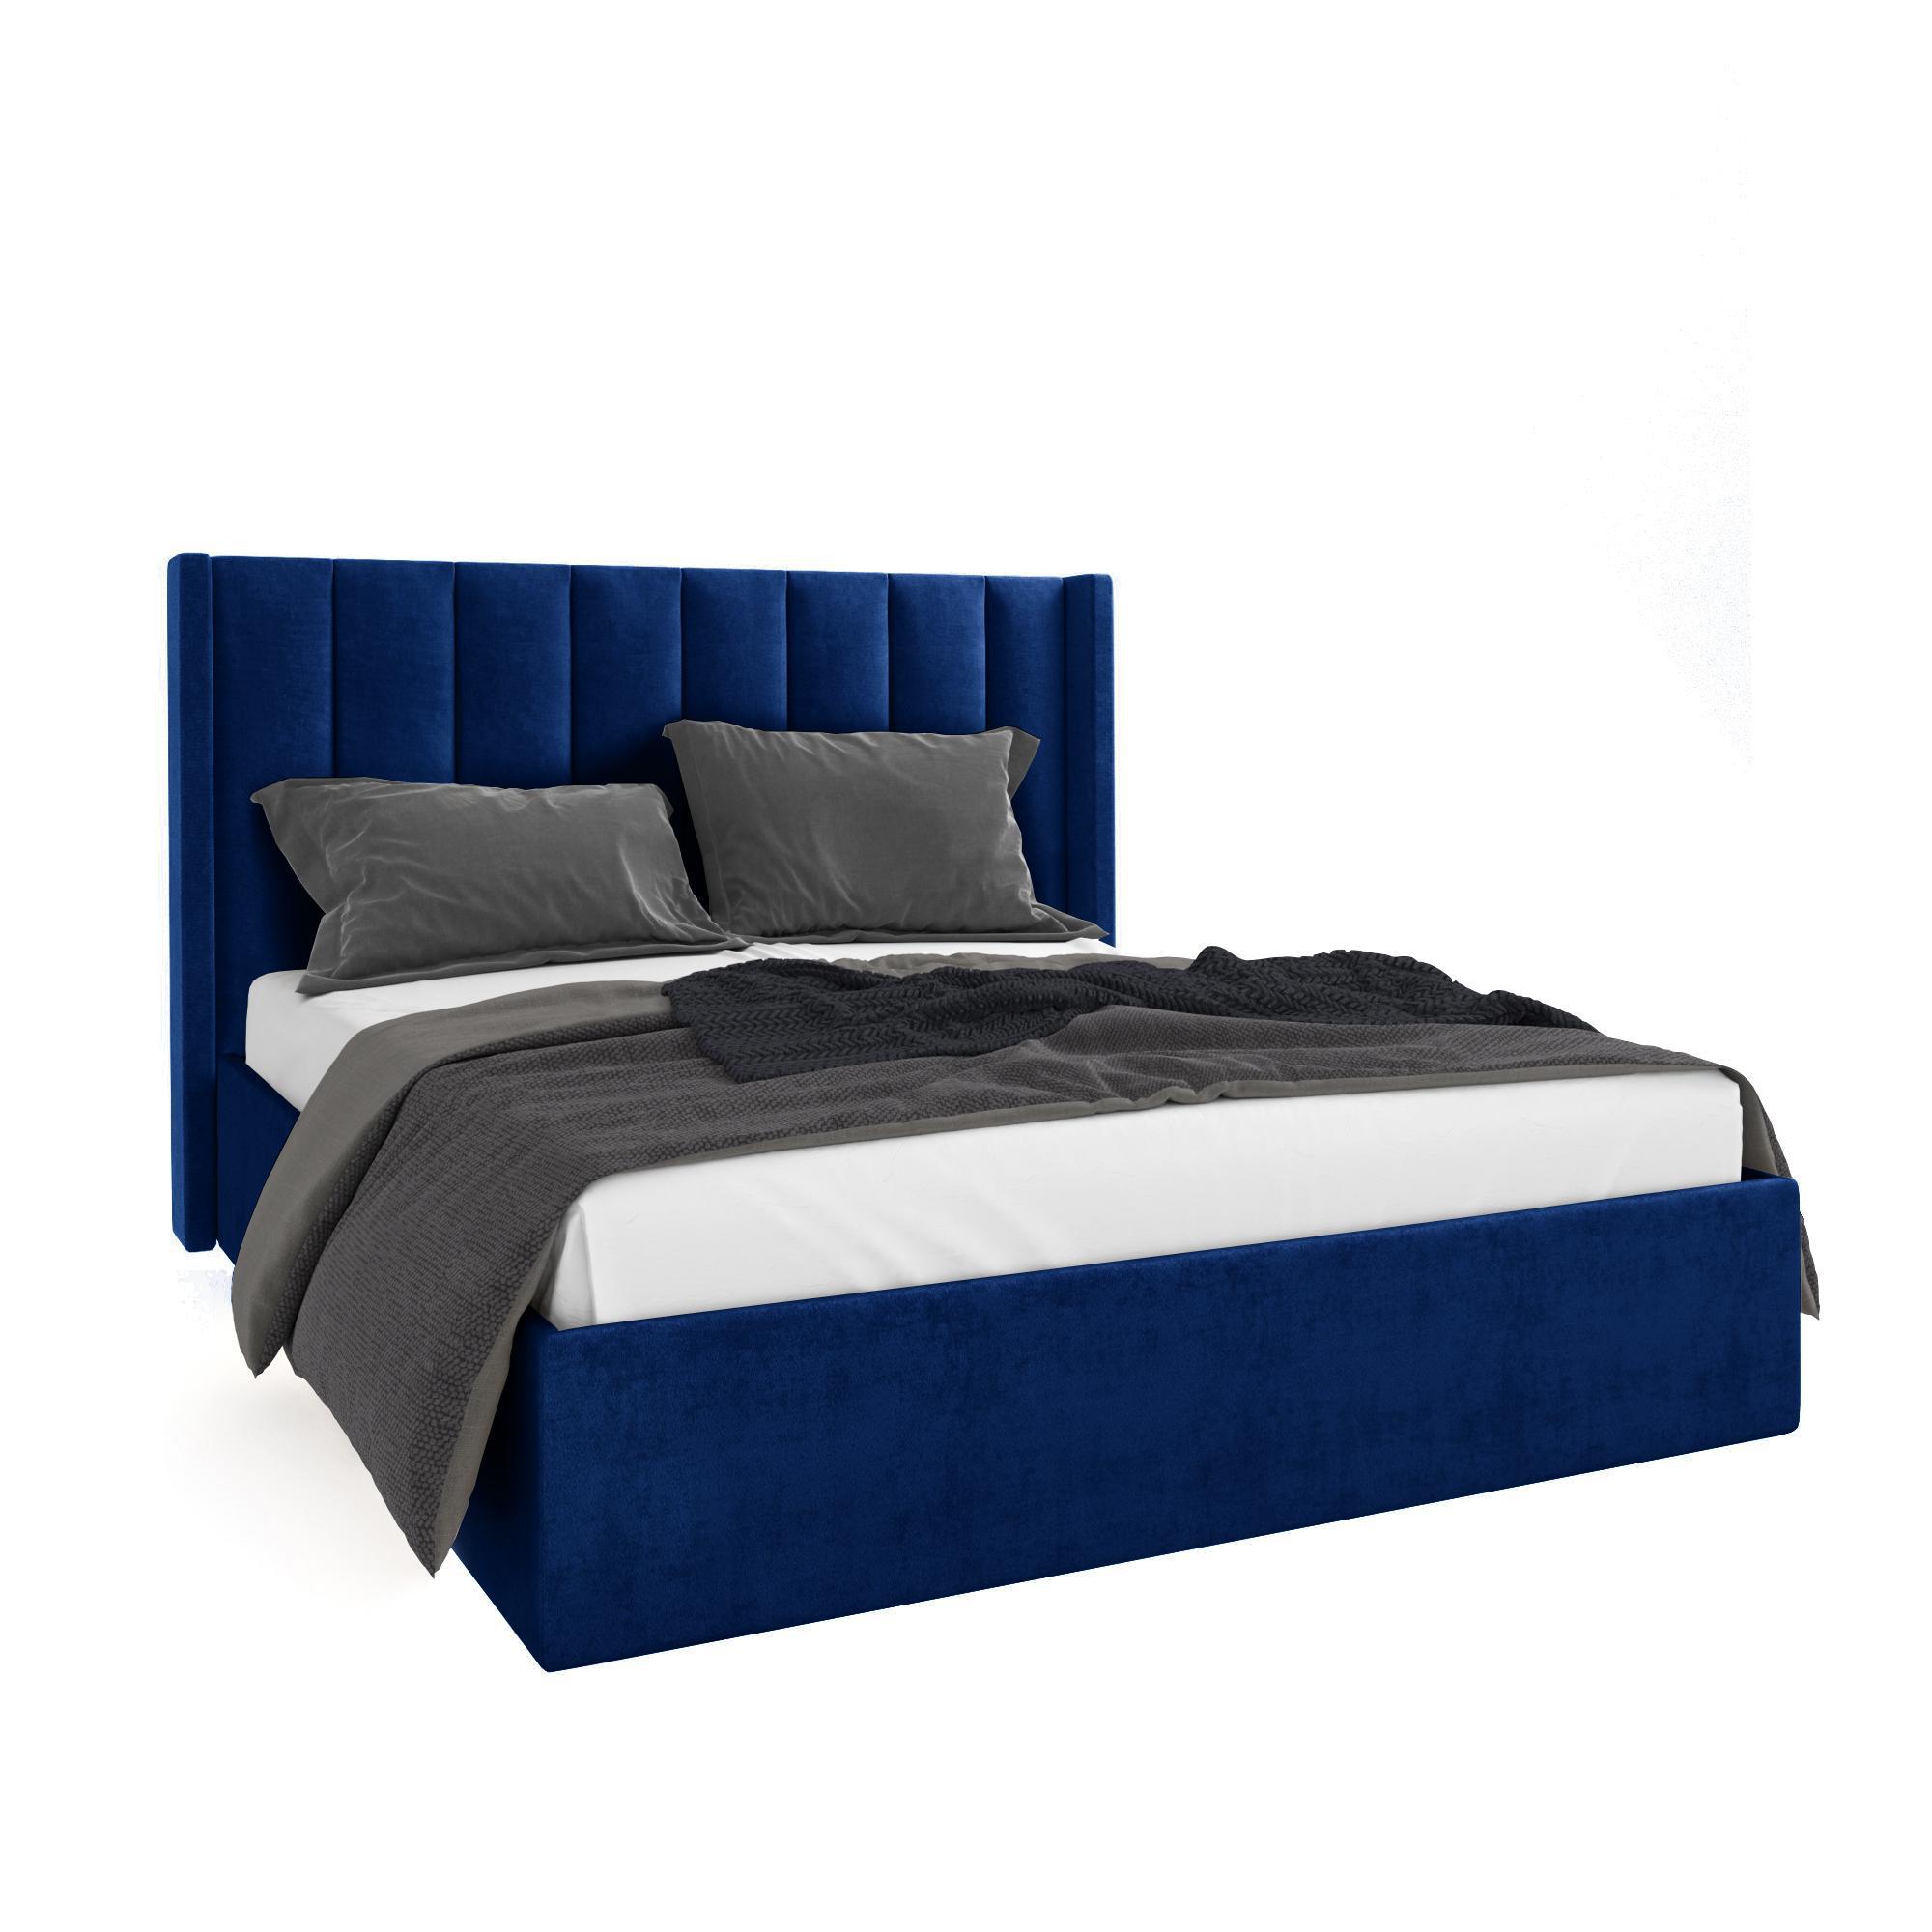 Кровать Жаклиз синяя 160х200 изображение товара